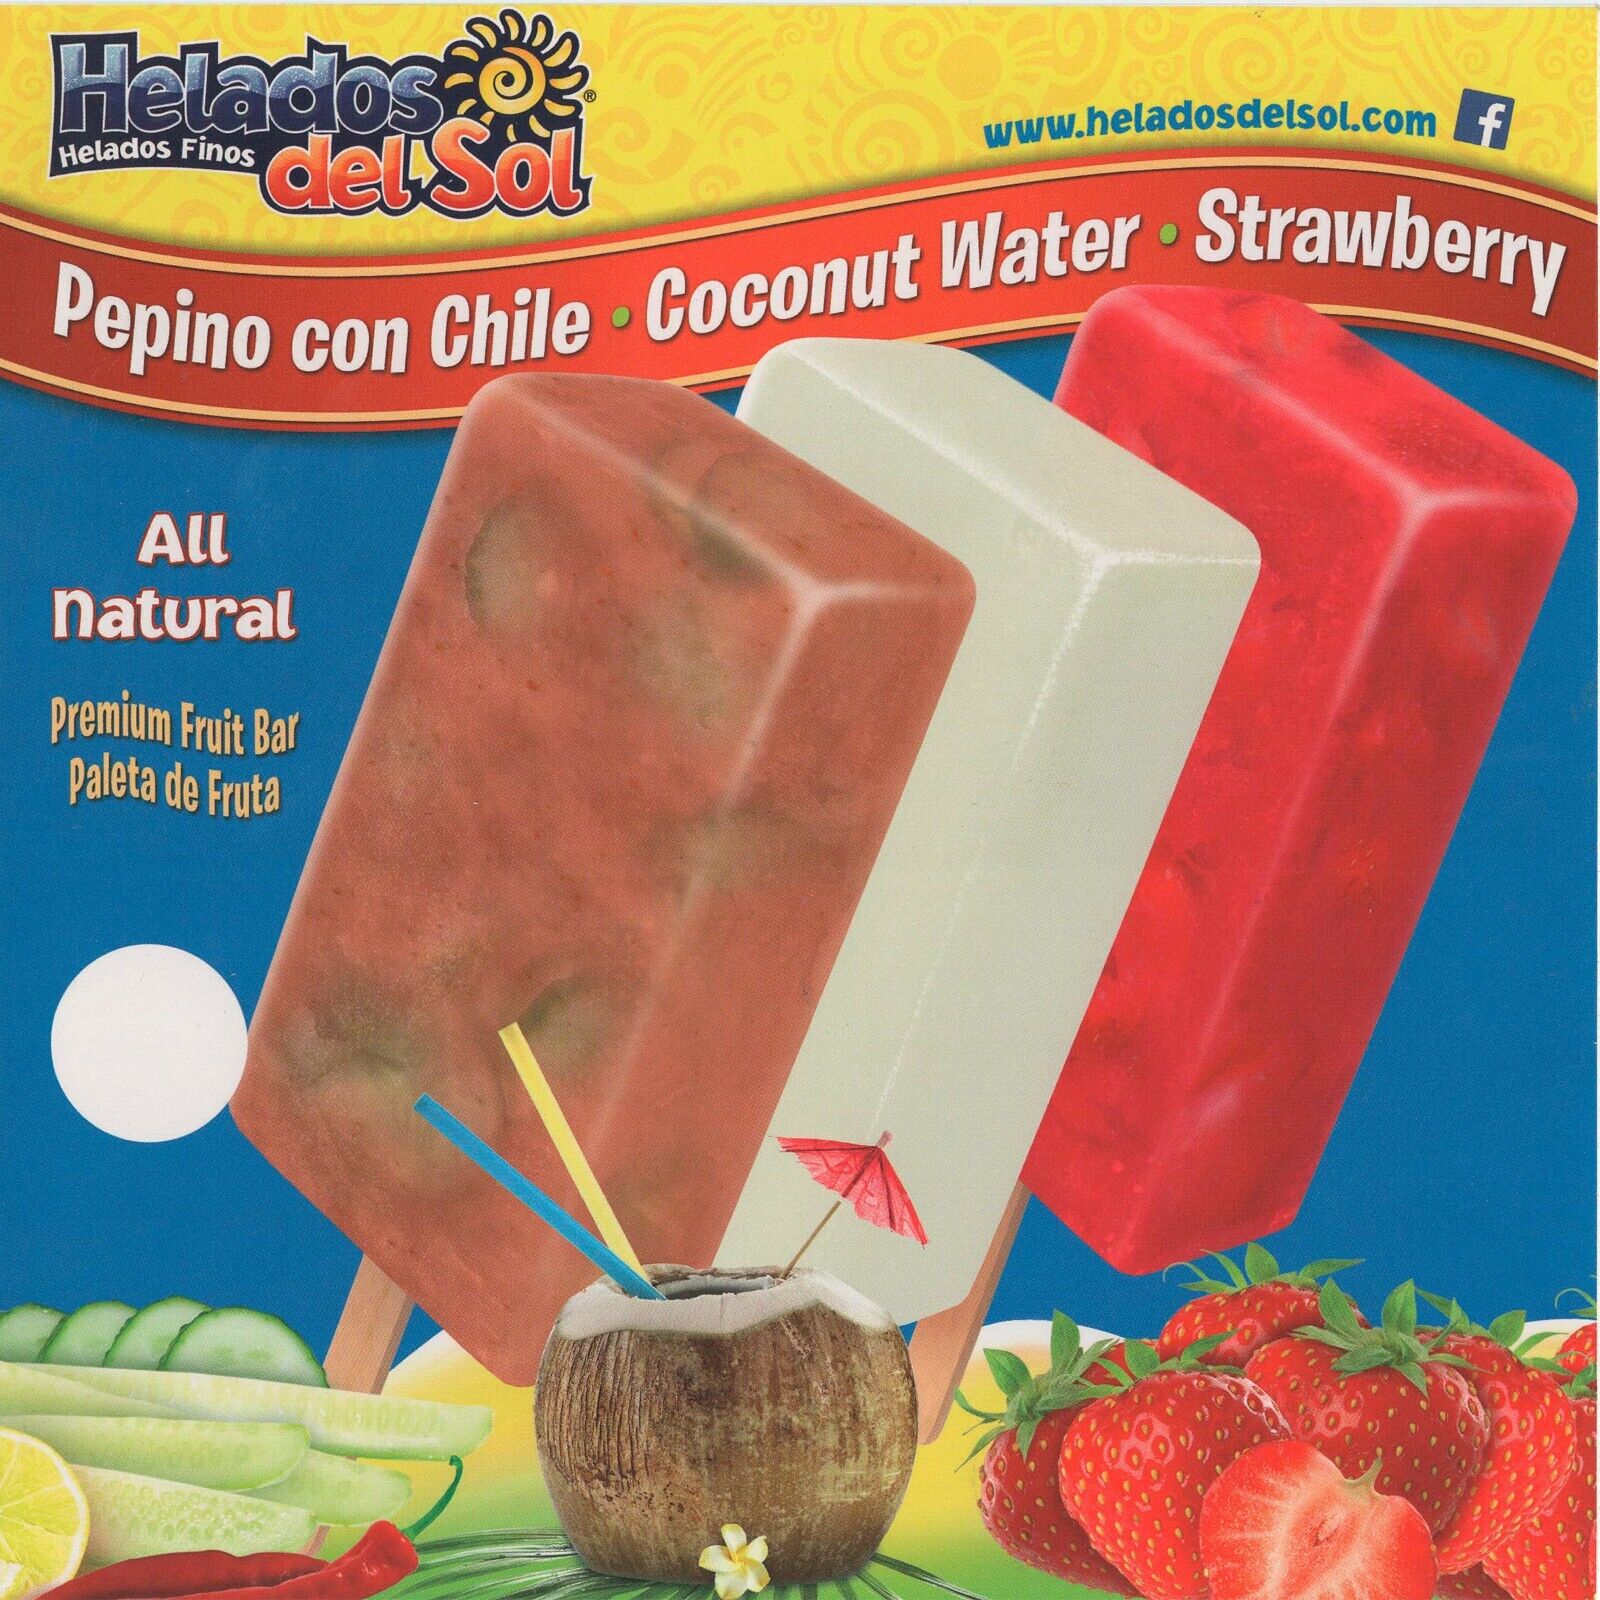 Helados del Sol Pepino con Chile, Coconut Water, Strawberry Ice, Sticker 8\